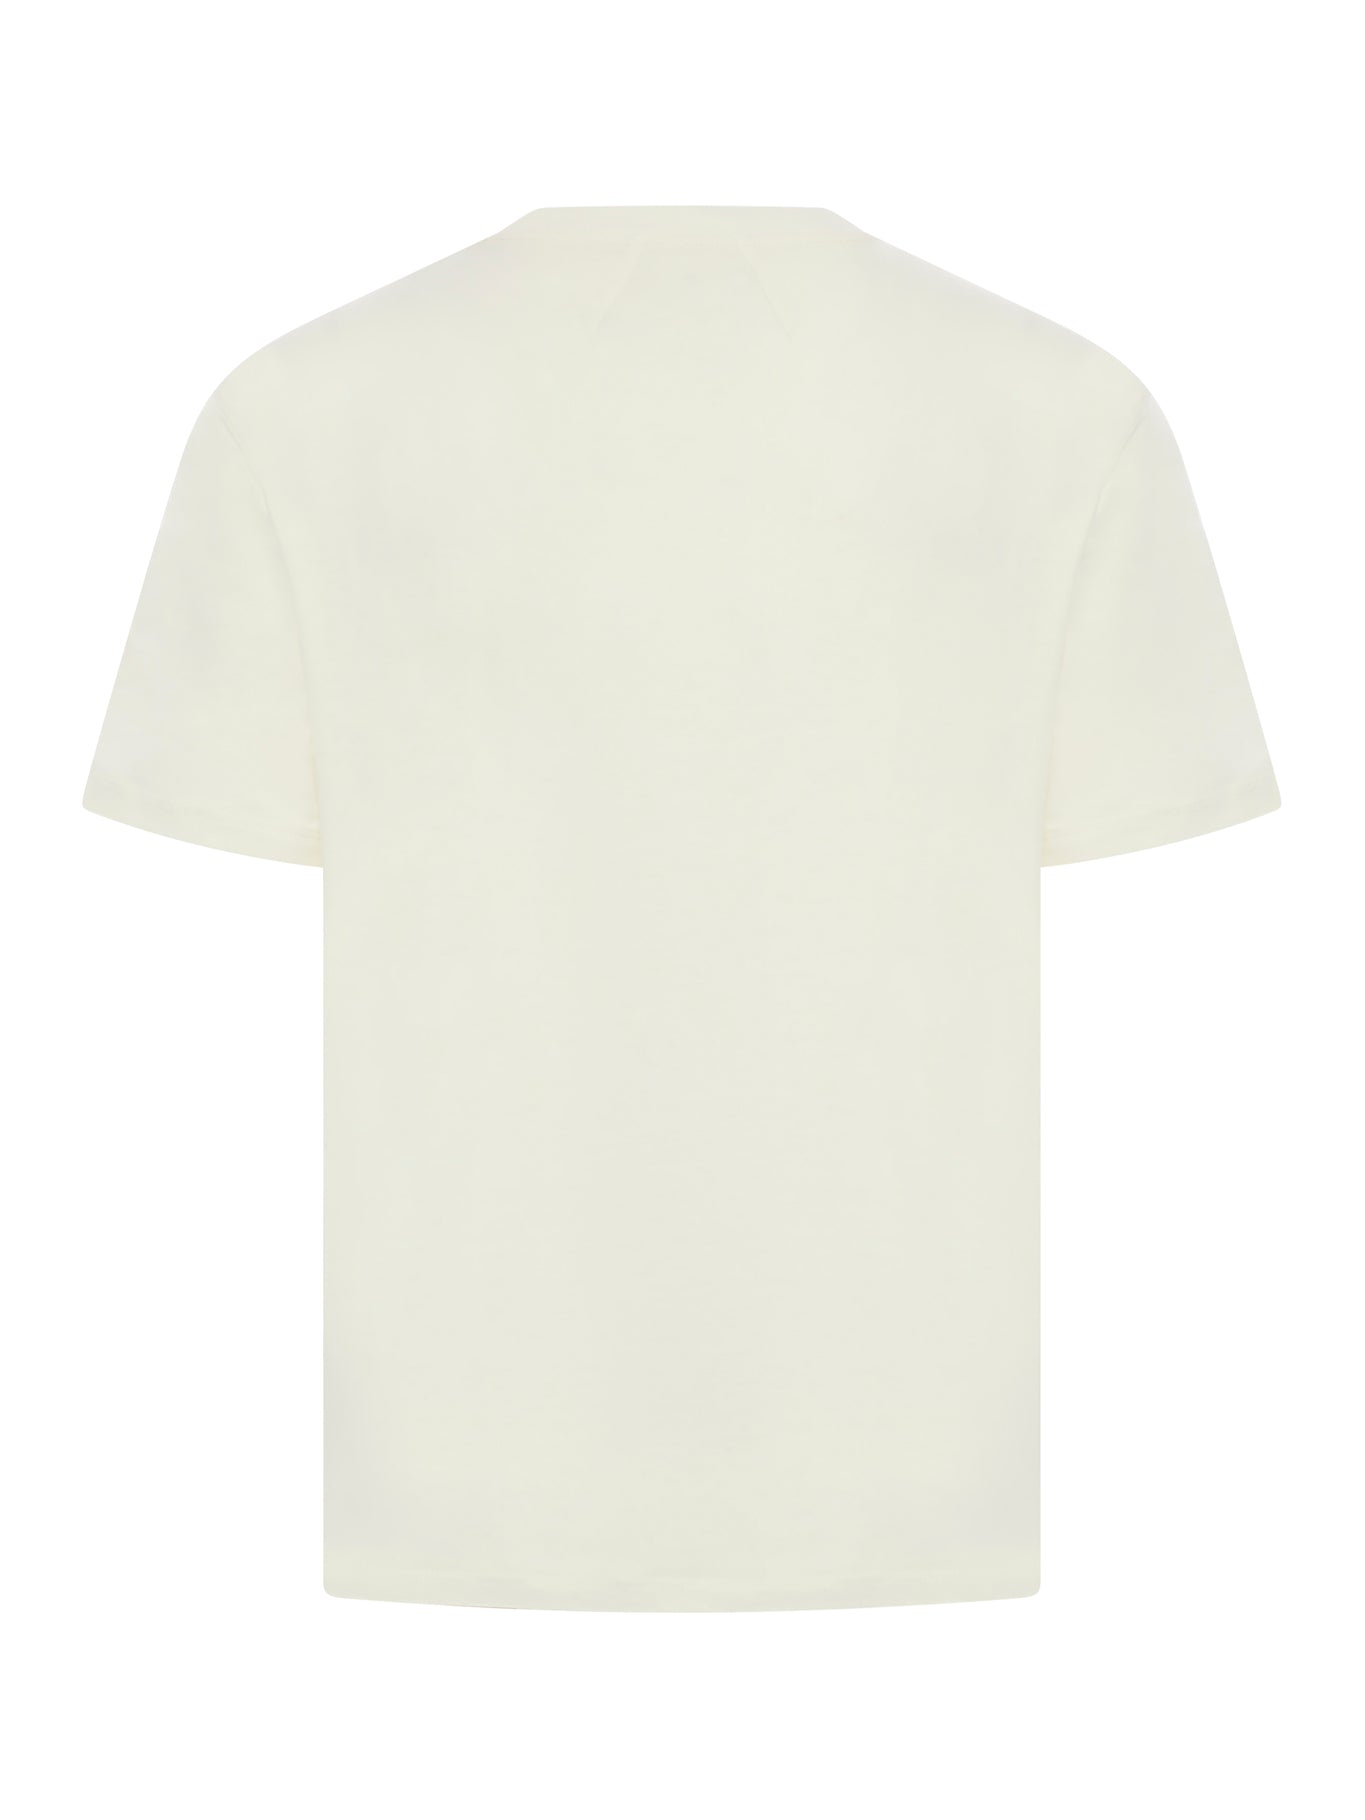 Cannes Beach-print cotton T-shirt